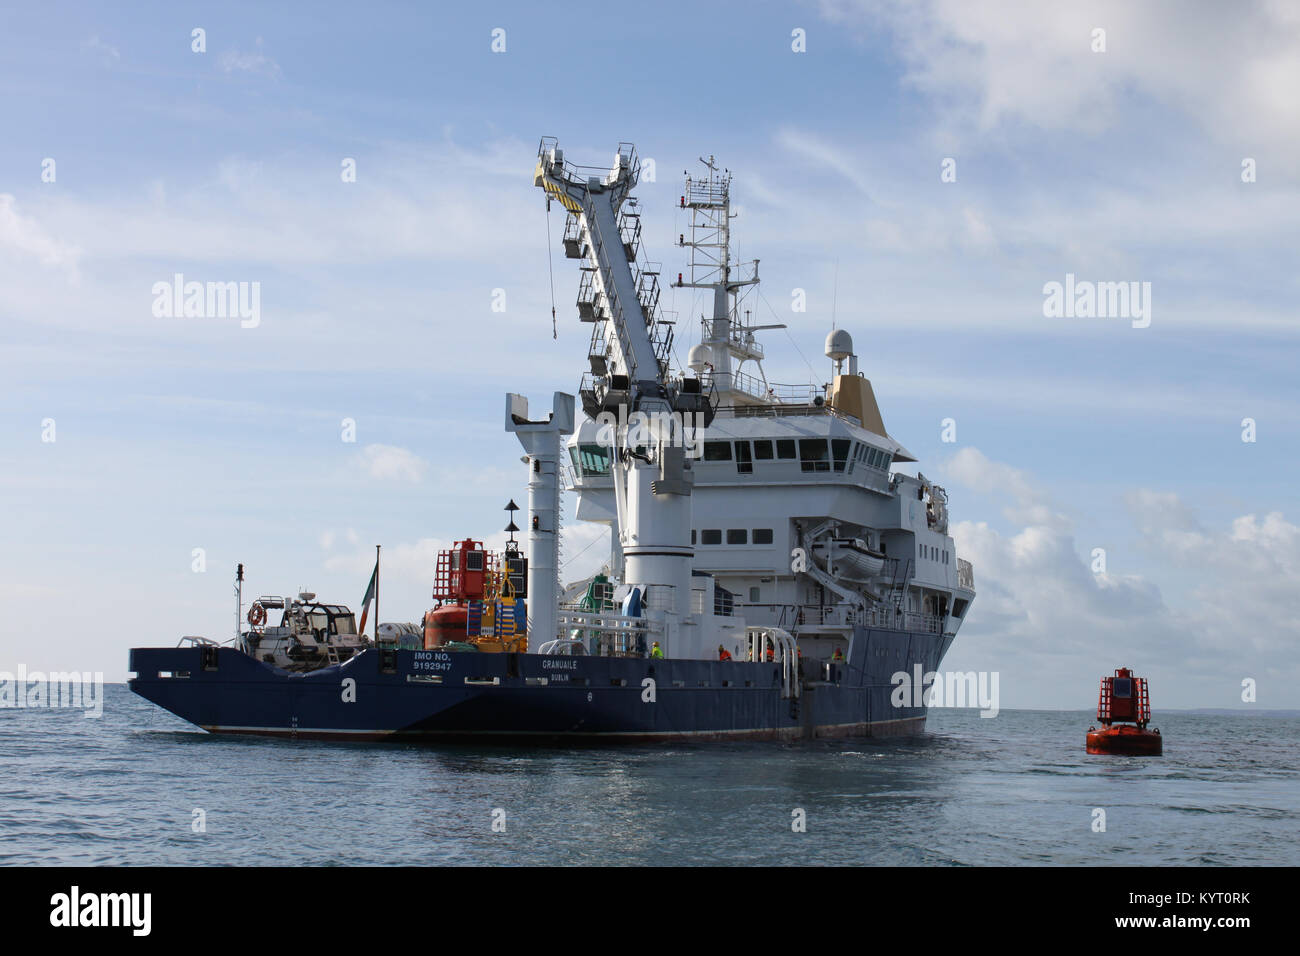 Feux de navire service irlandais sur l'océan atlantique, façon sauvage de l'Atlantique, en Irlande Banque D'Images